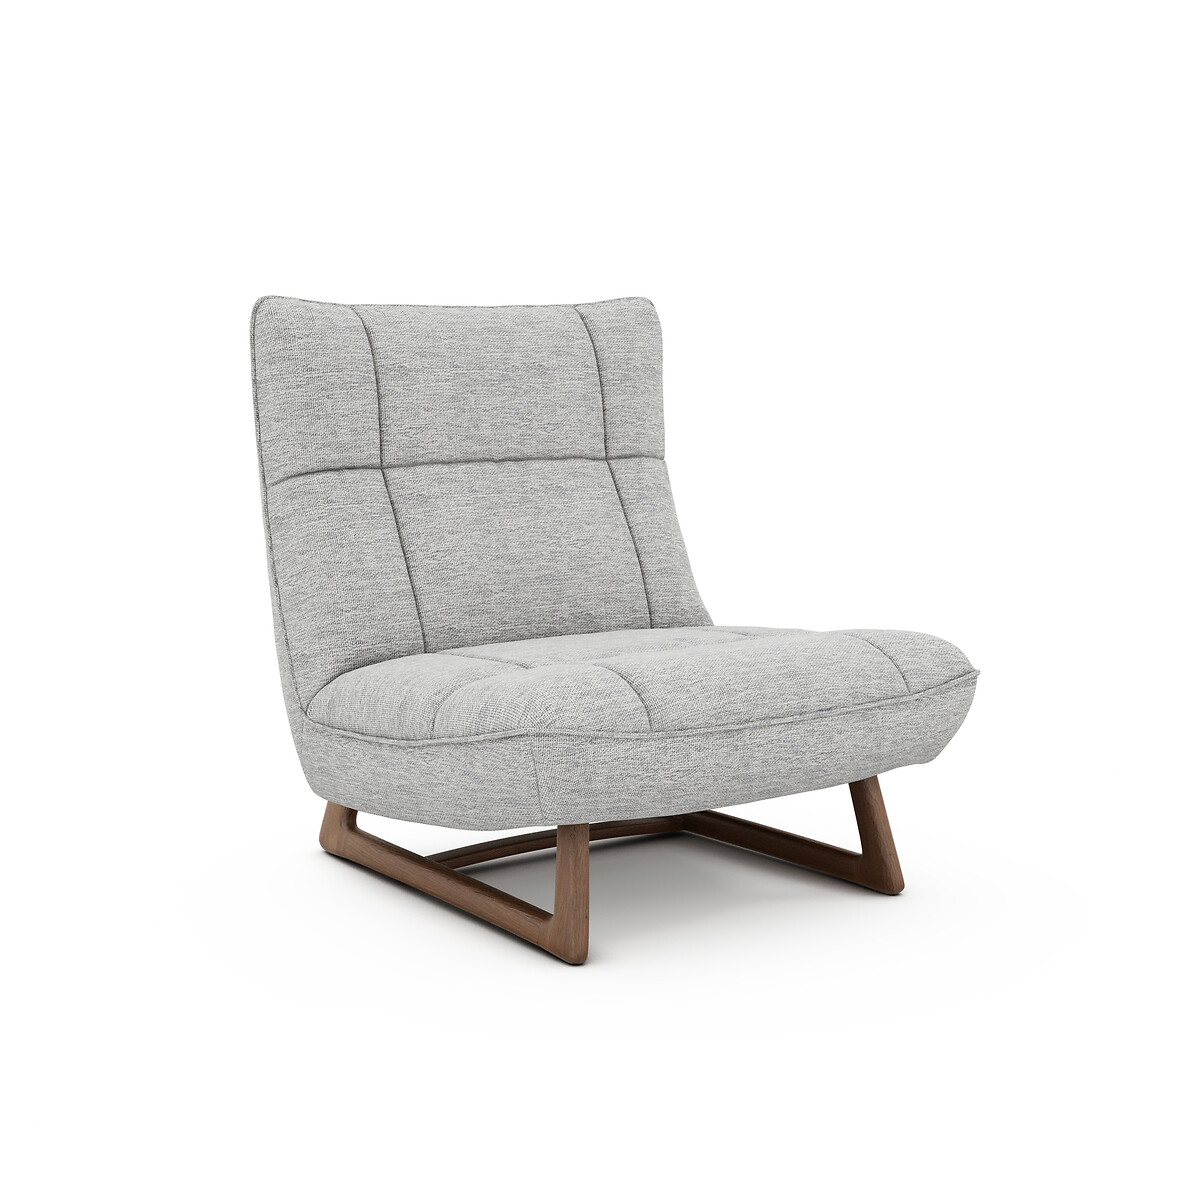 Кресло Из орехового дерева и ткани меланж Lafar единый размер серый